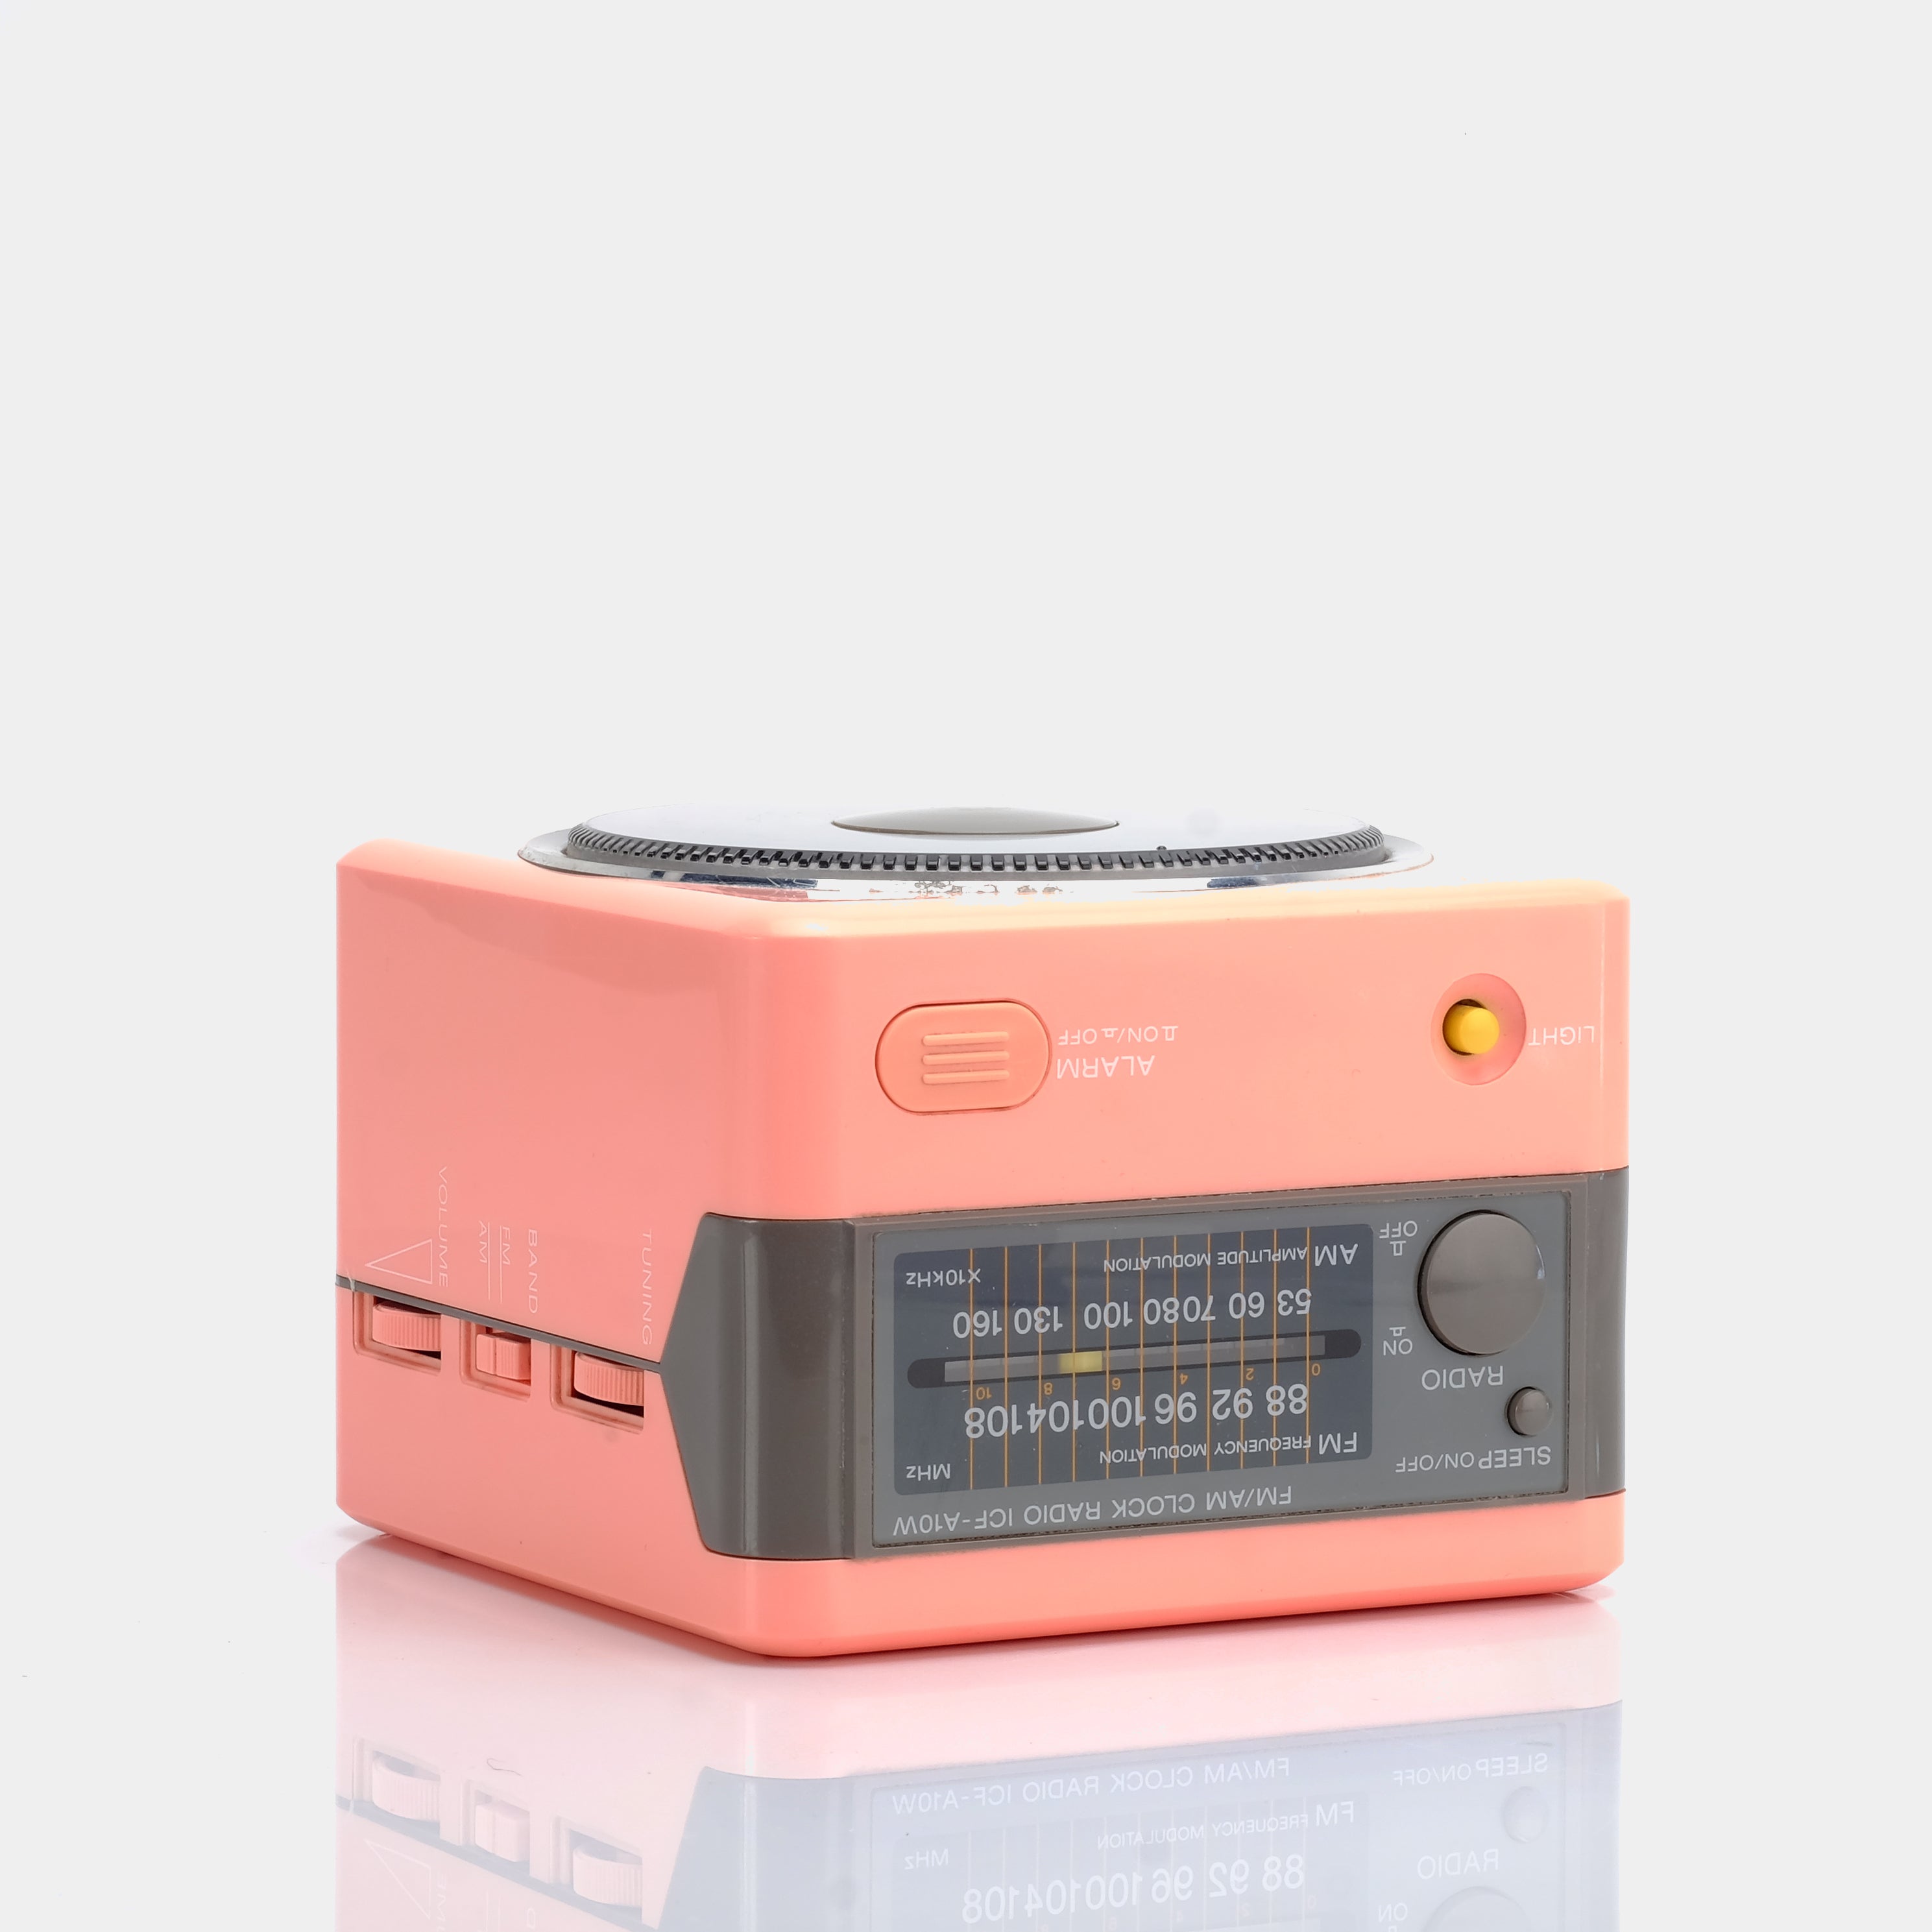 Sony ICF-A10W Pink AM/FM Alarm Clock Radio